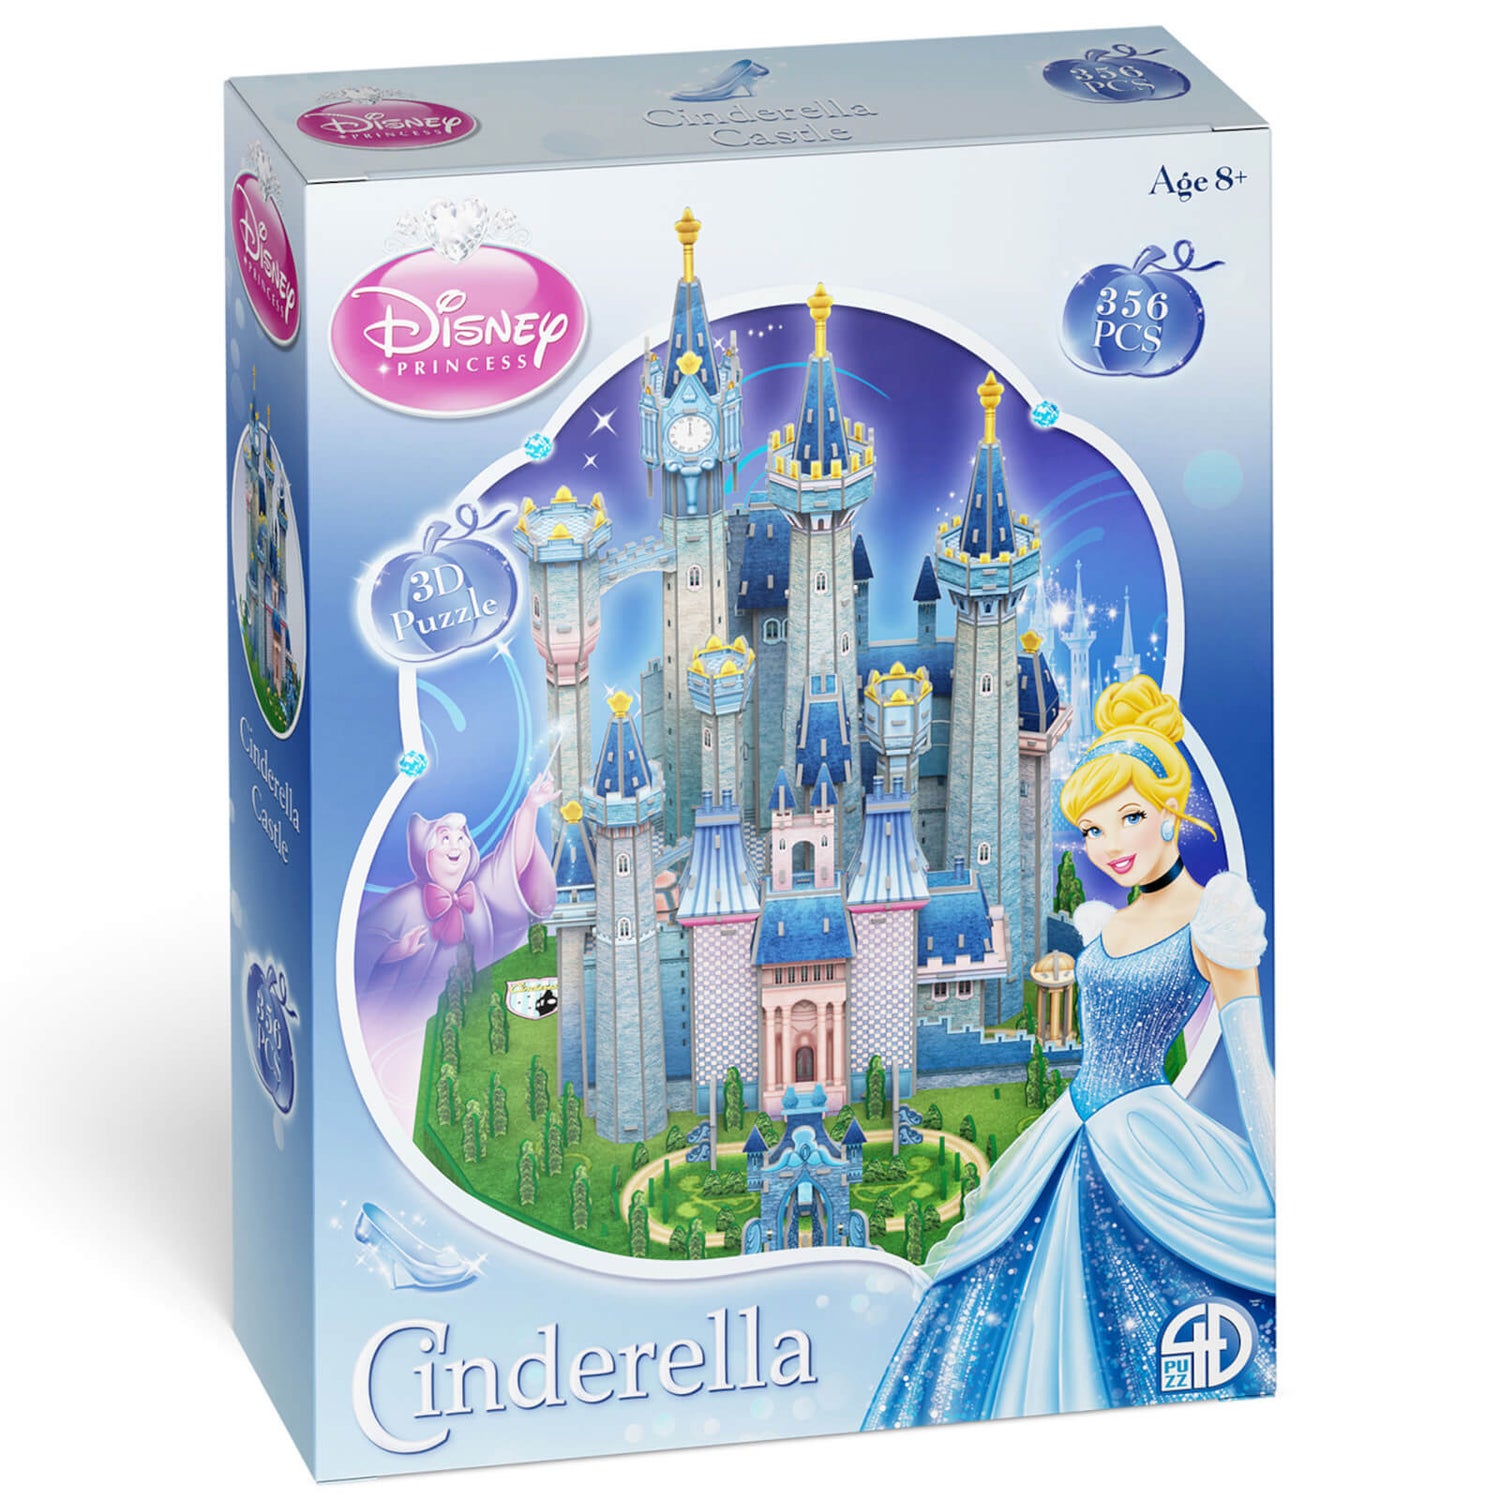 Disney Cinderella Castle Paper Core 3D Puzzle Model